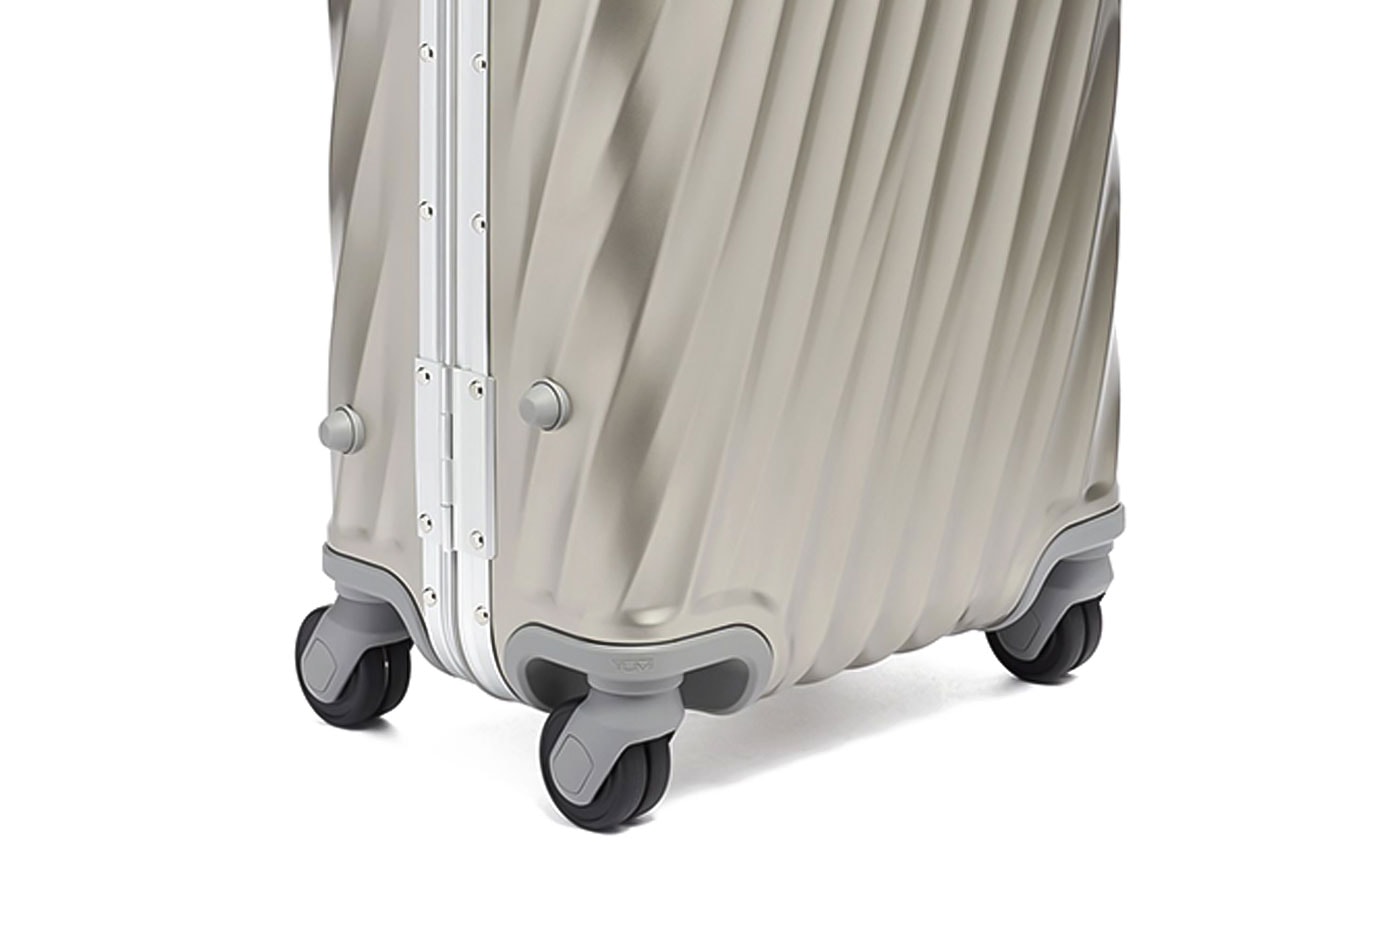 TUMI 19 Degree Titanium Luggage series metal aluminum luggage suitcases 